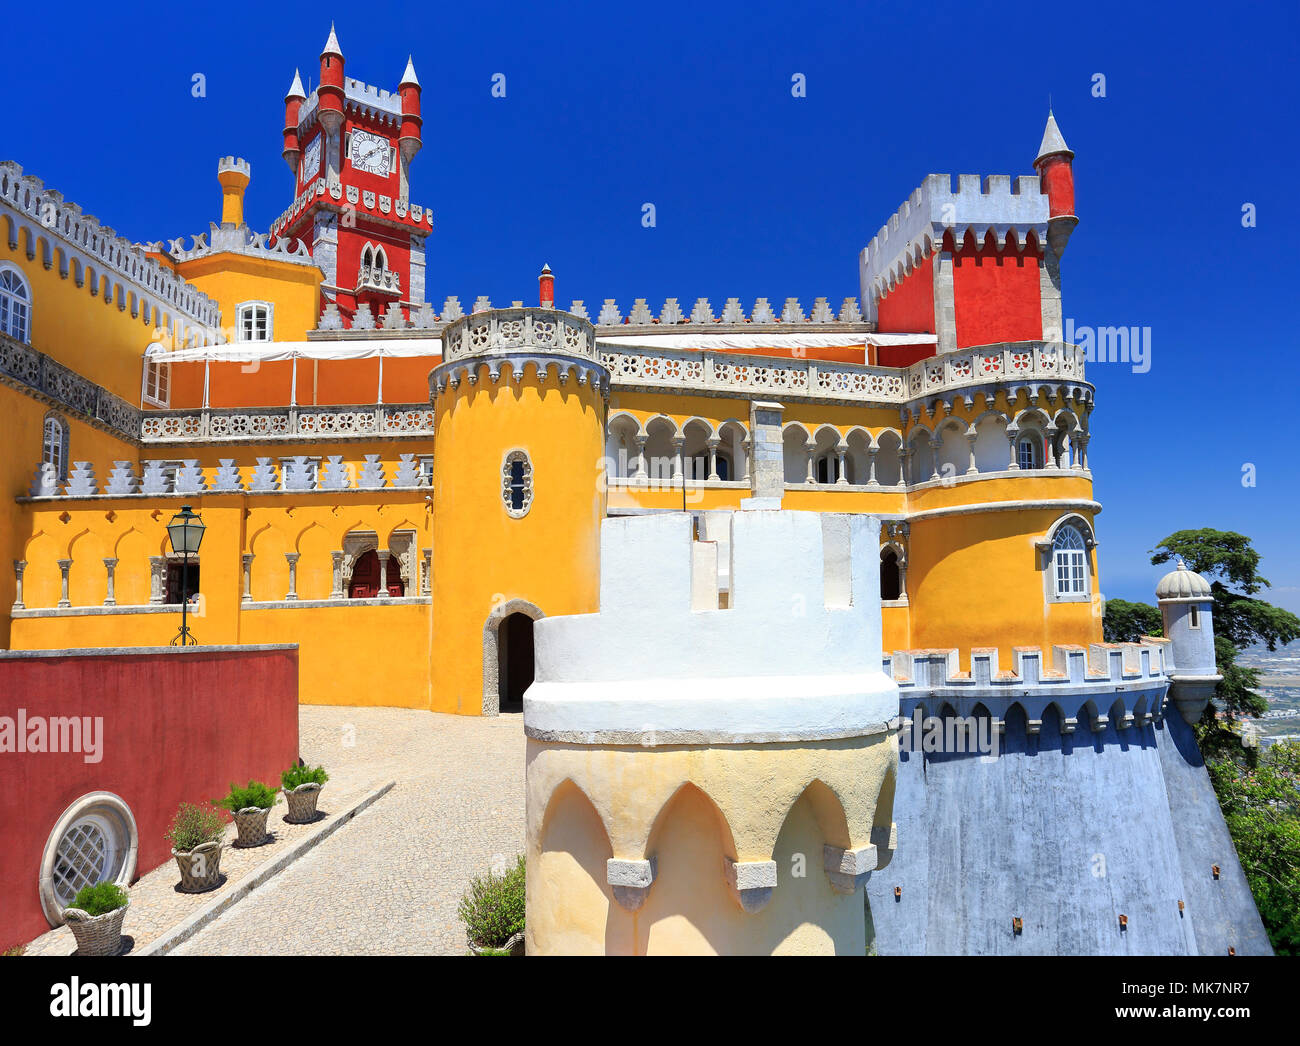 La pena Palace è un castello Romanticist nel comune di Sintra, Portogallo. Foto Stock